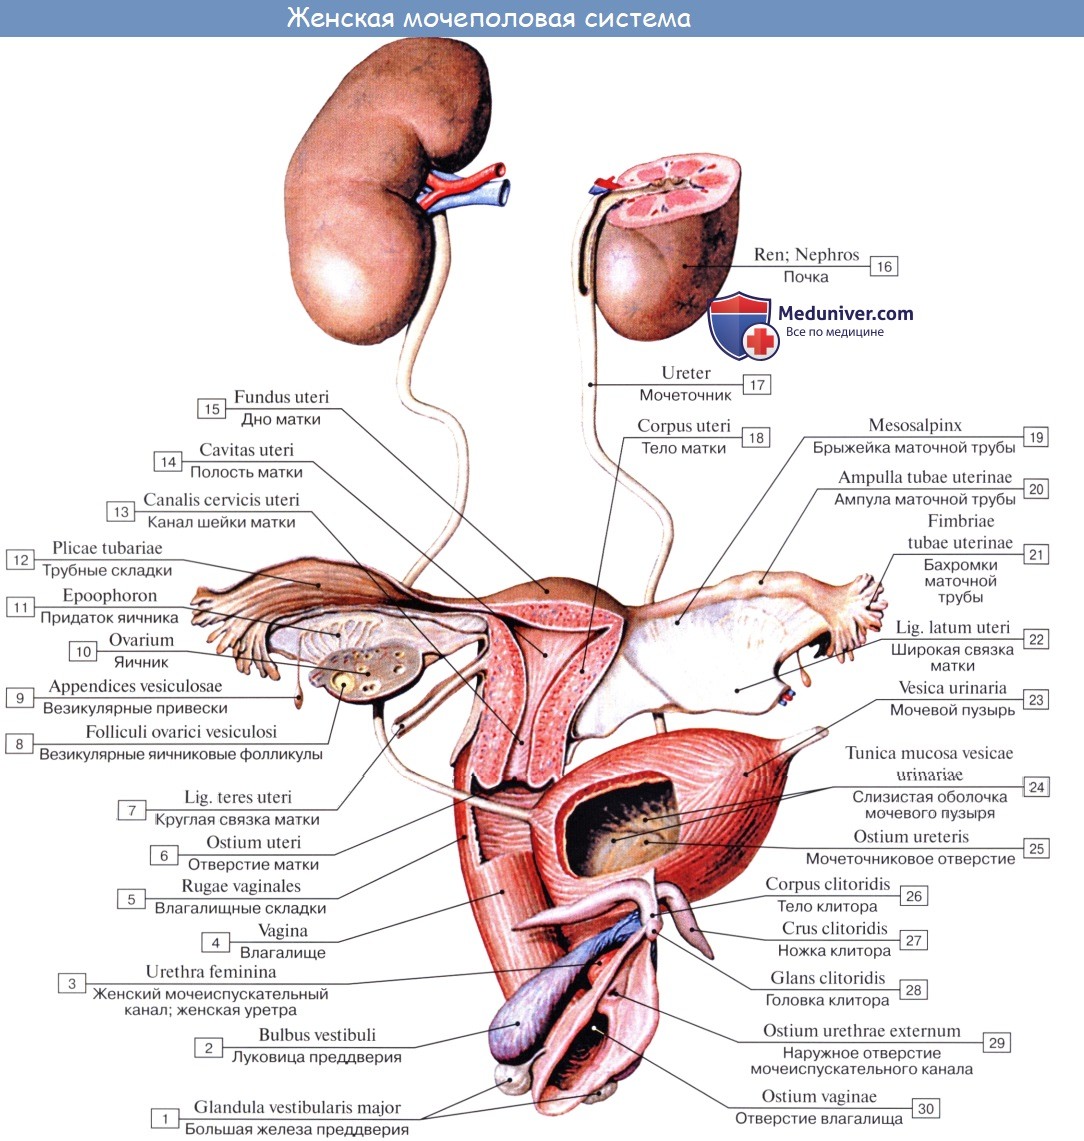 Анатомия: Мочеполовая система, systema urogenitale. Мочевые органы, organa urinaria